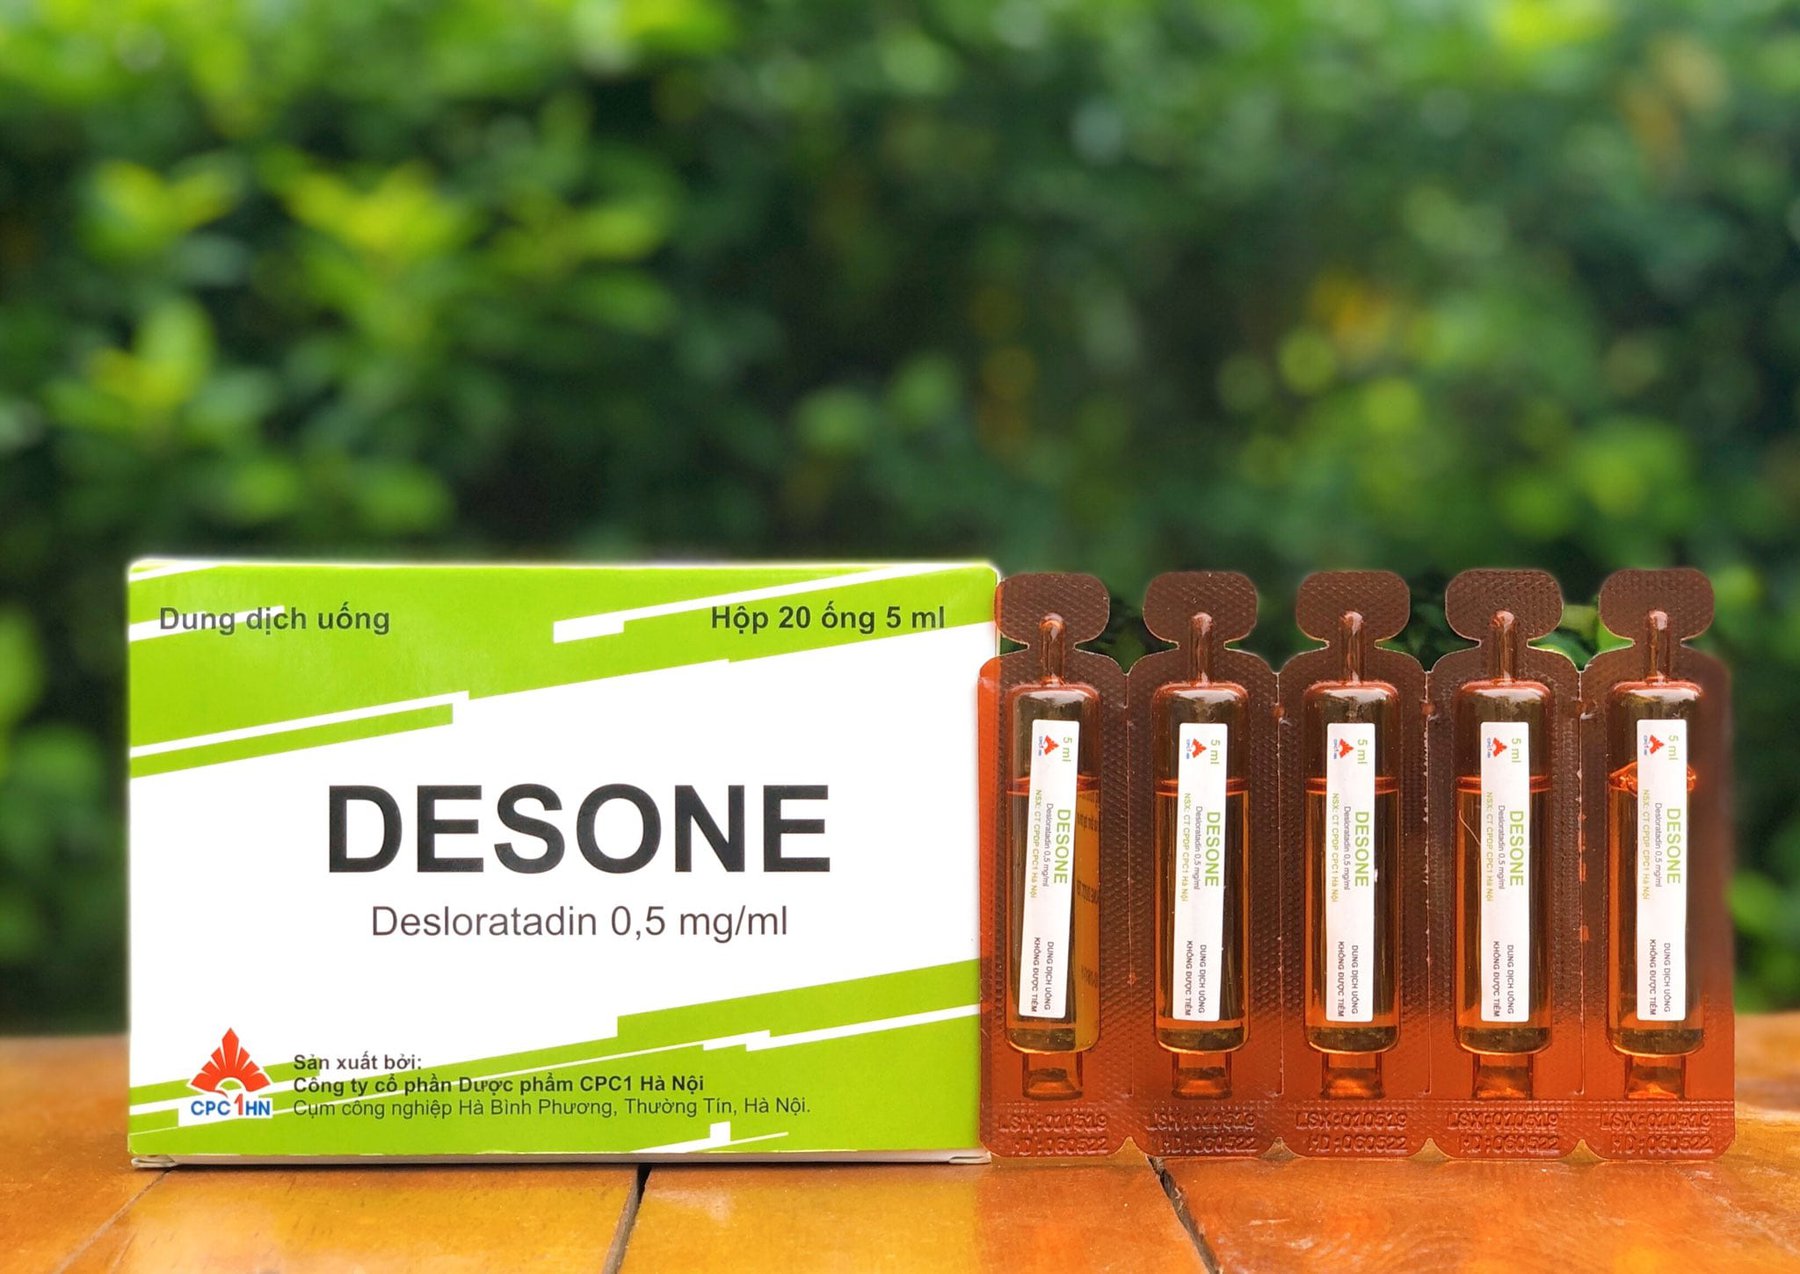 Tác dụng của thuốc Desone 5ml